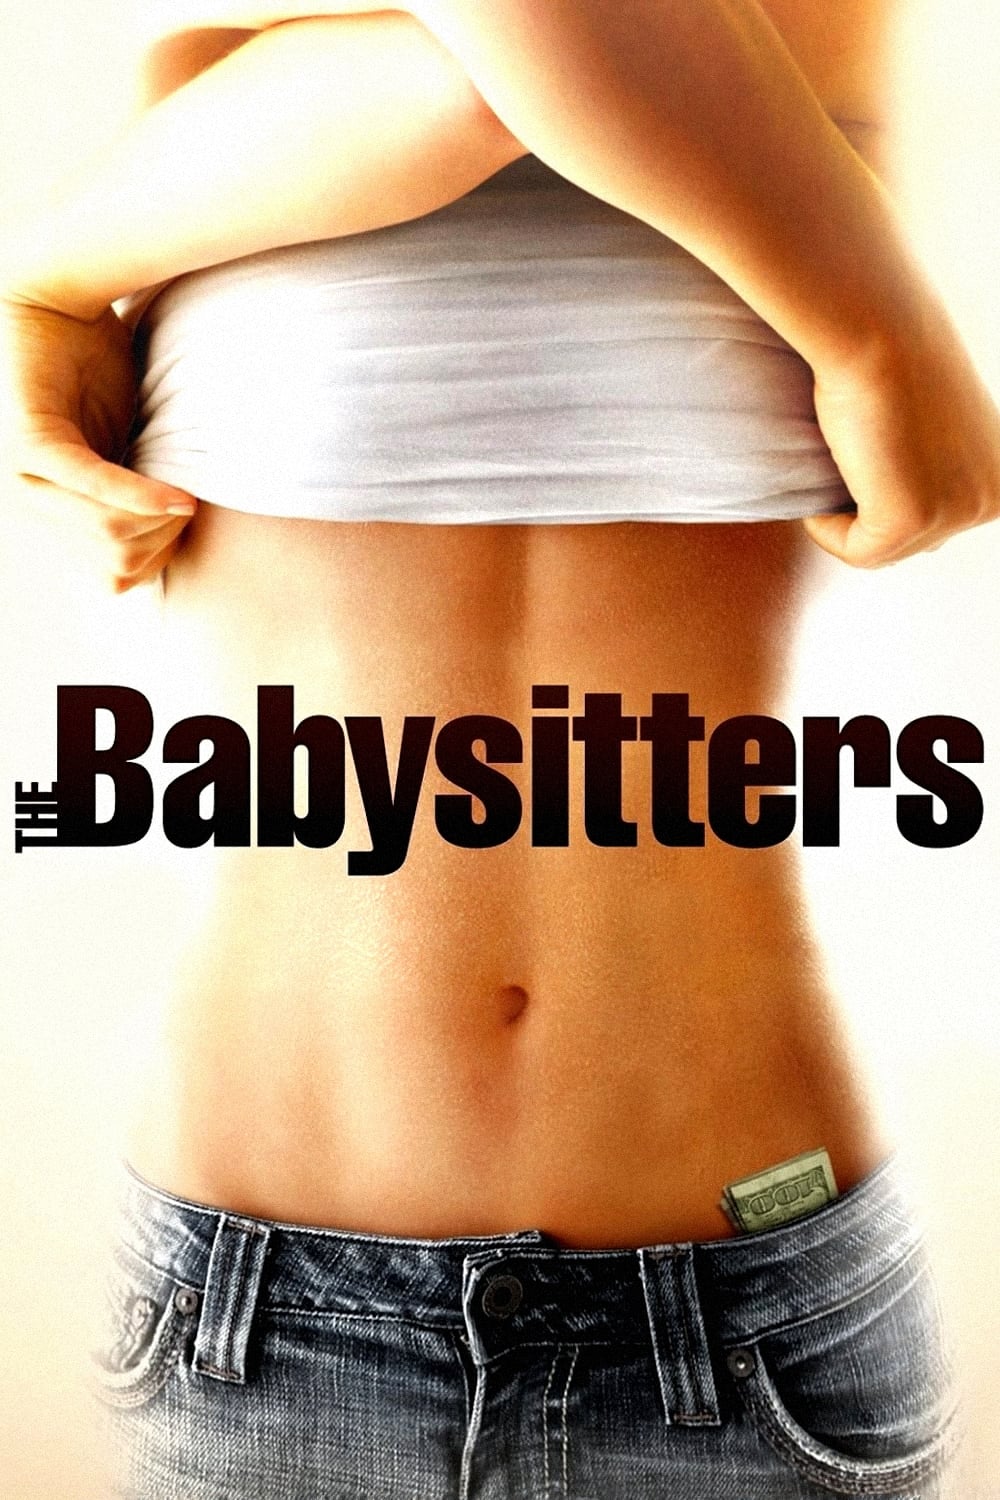 The Babysitters - Für Taschengeld mache ich alles